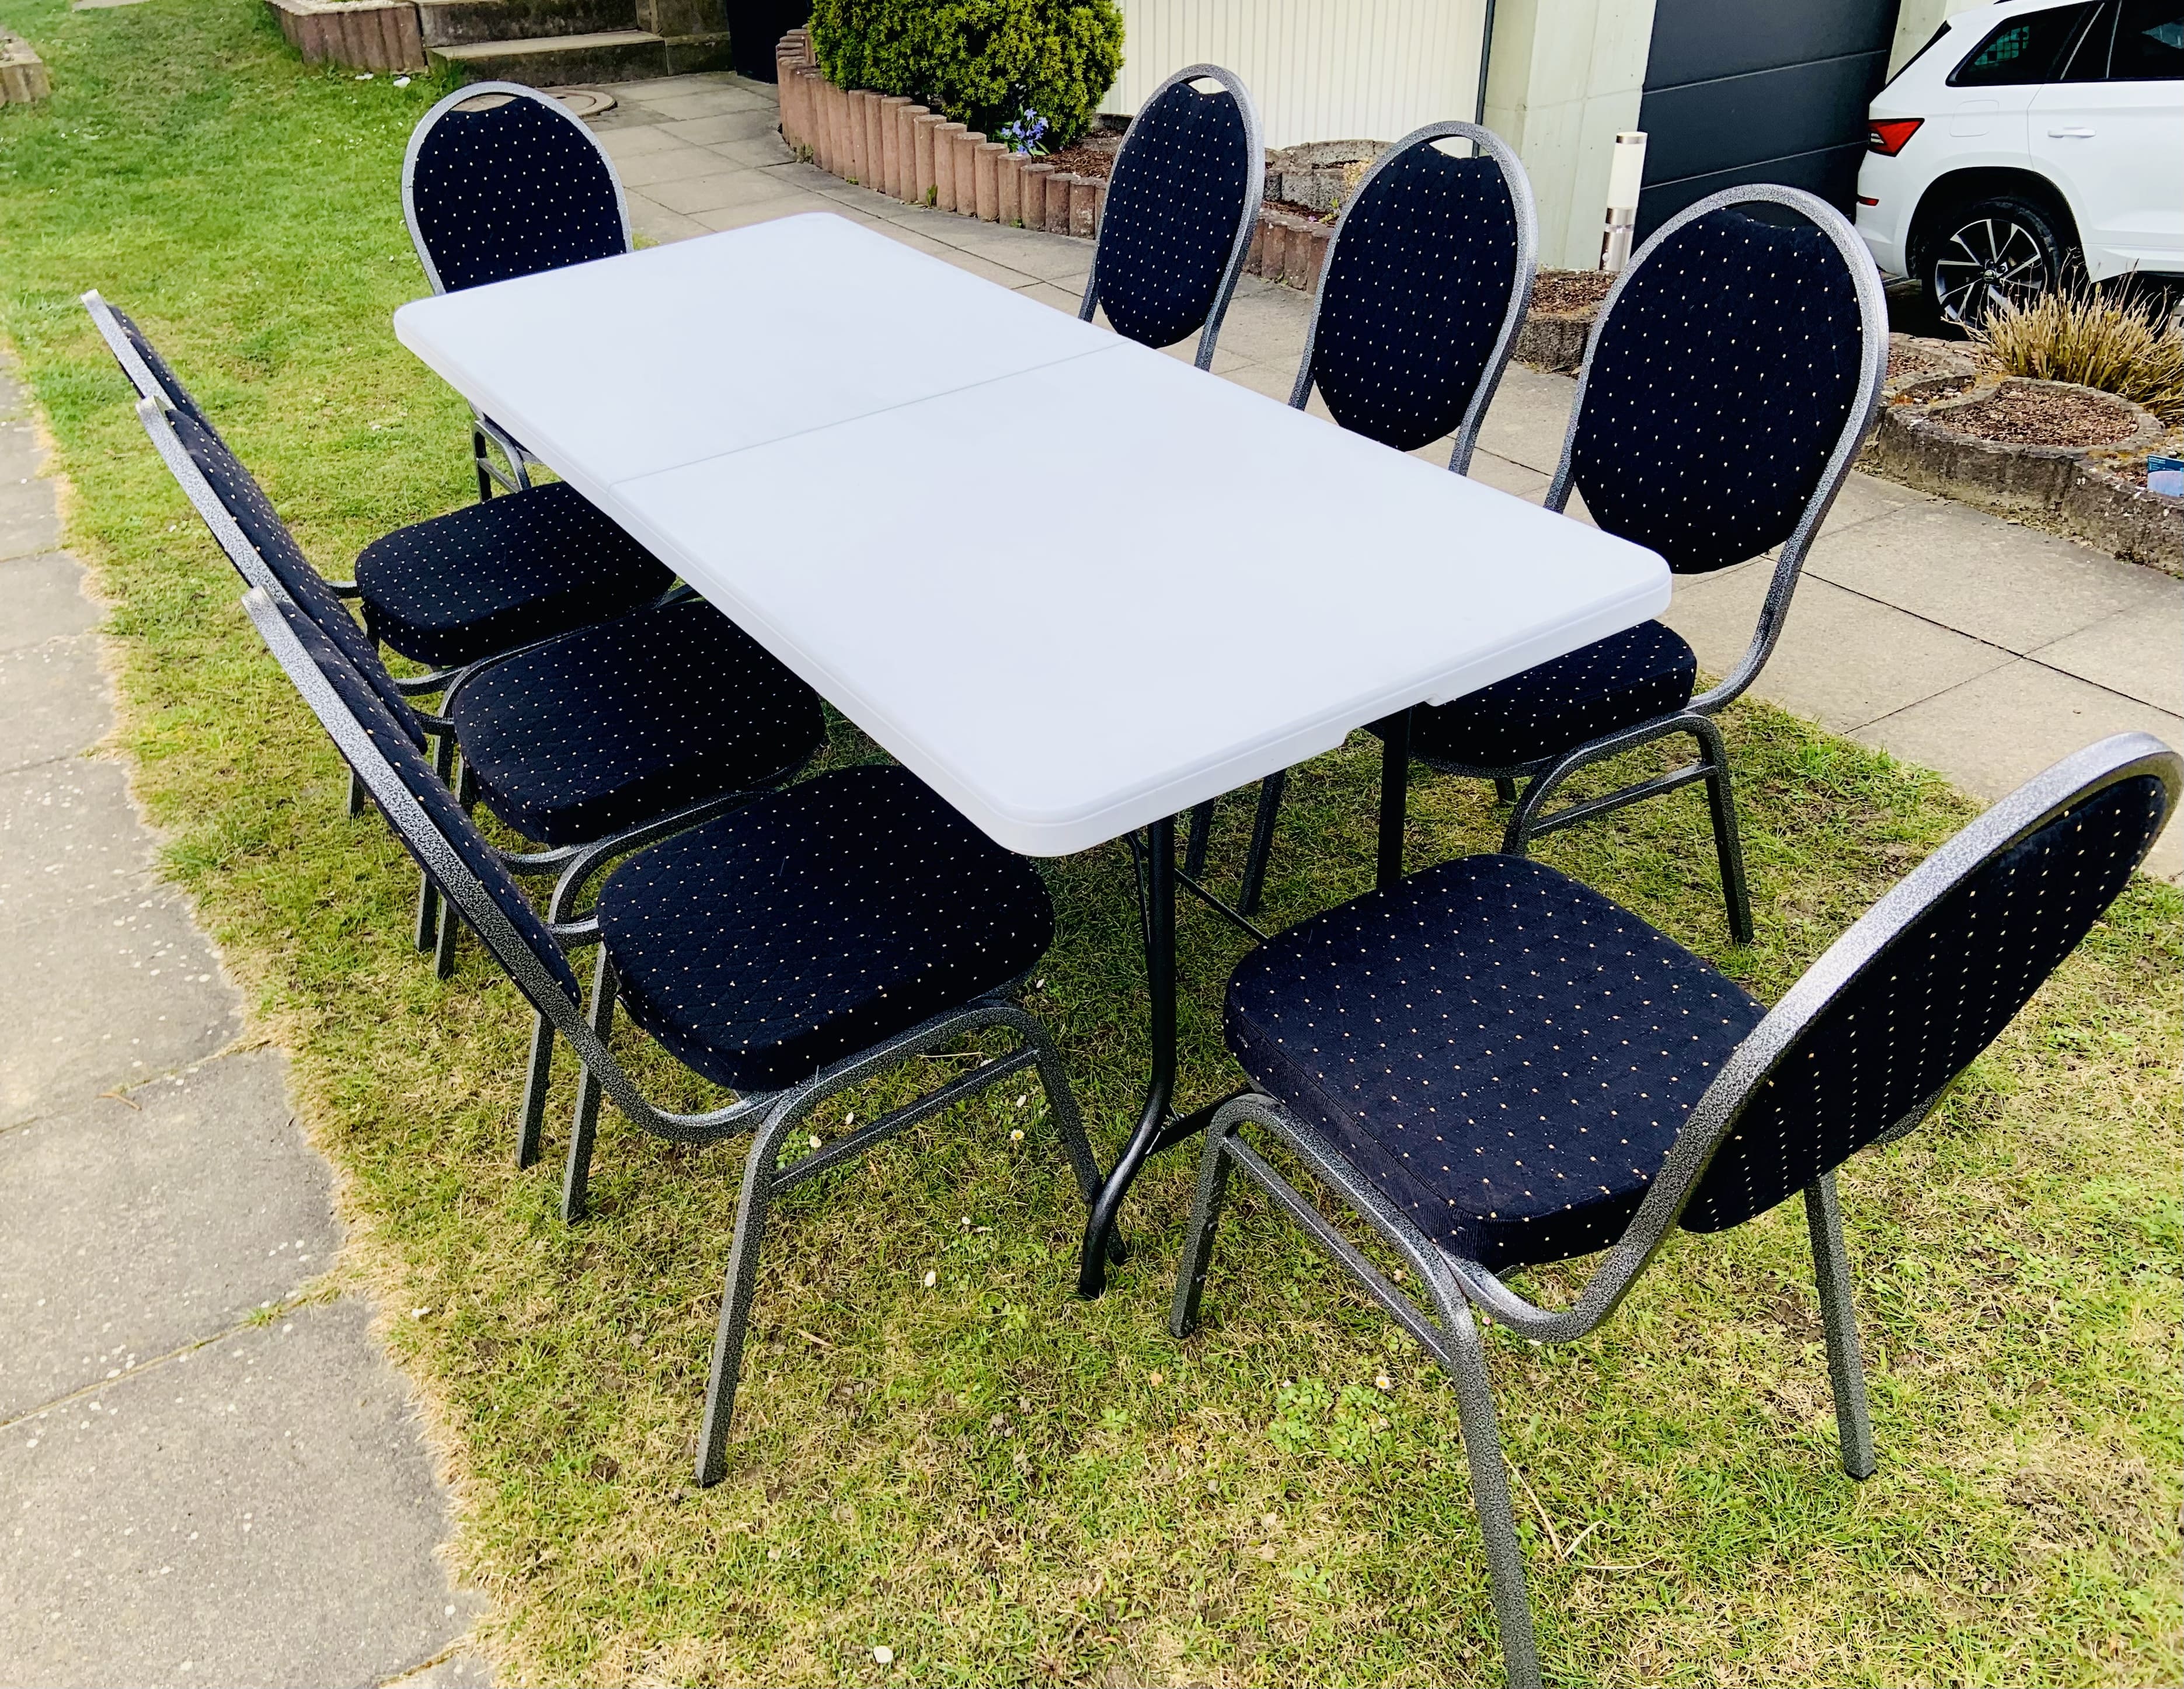 Tisch mit 8 Stühle, Bankettstühle mieten in Bielefeld